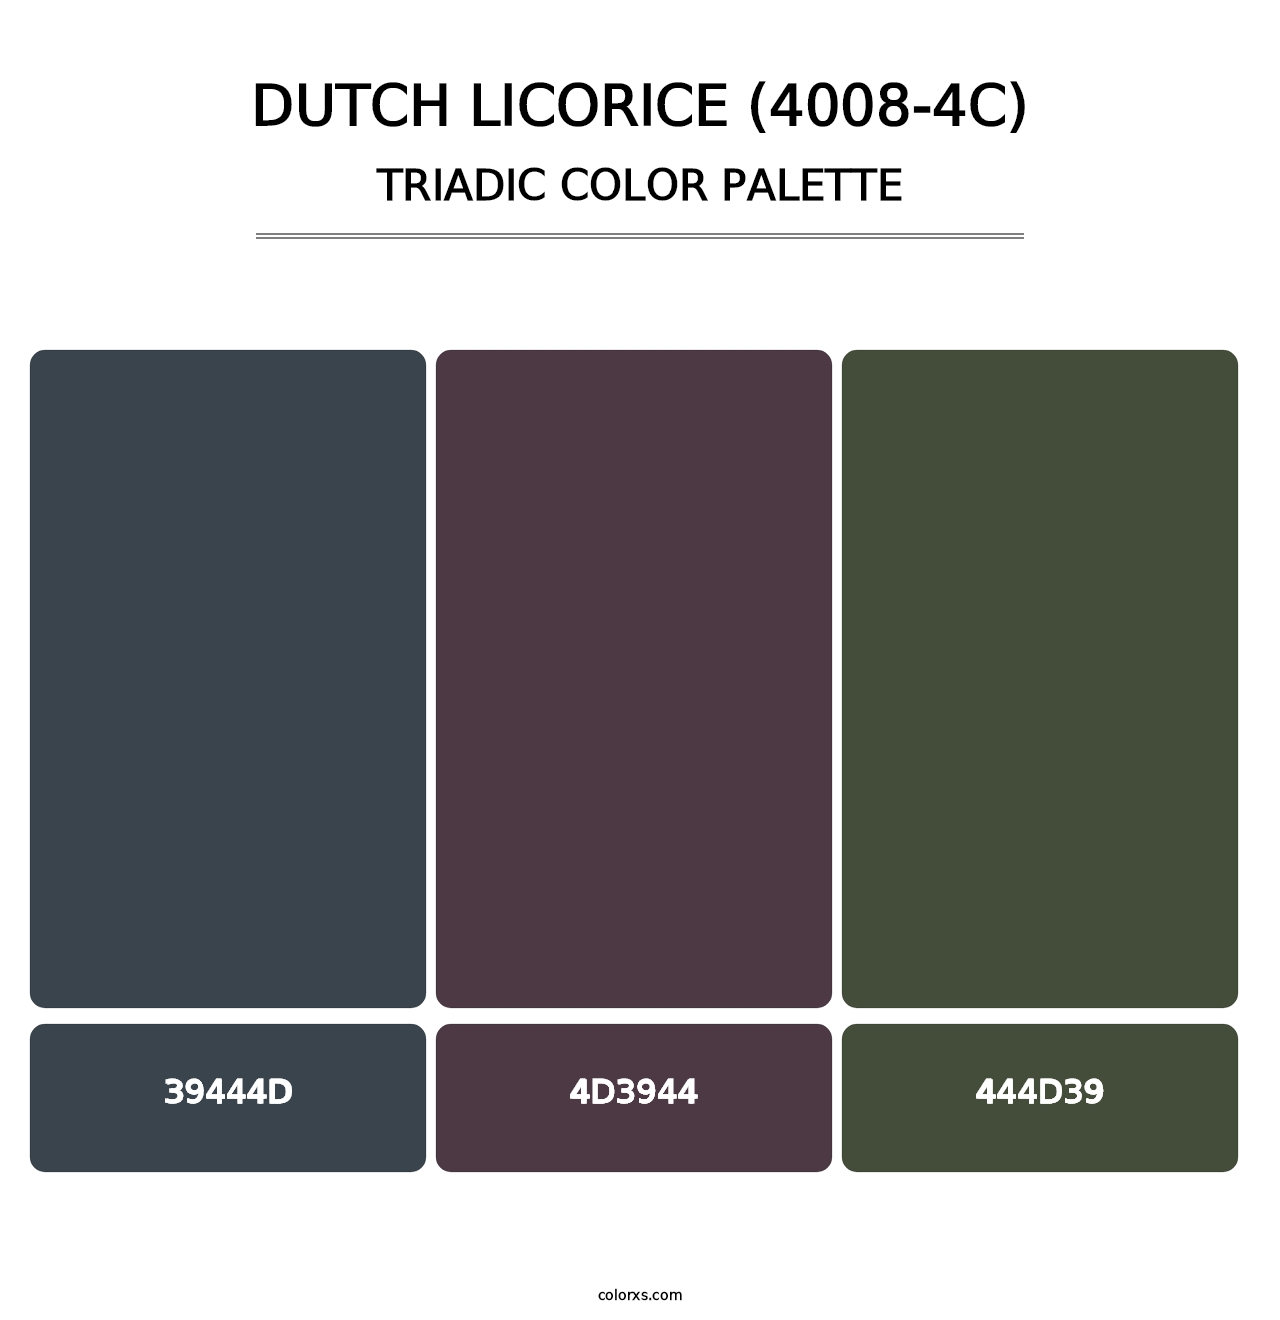 Dutch Licorice (4008-4C) - Triadic Color Palette